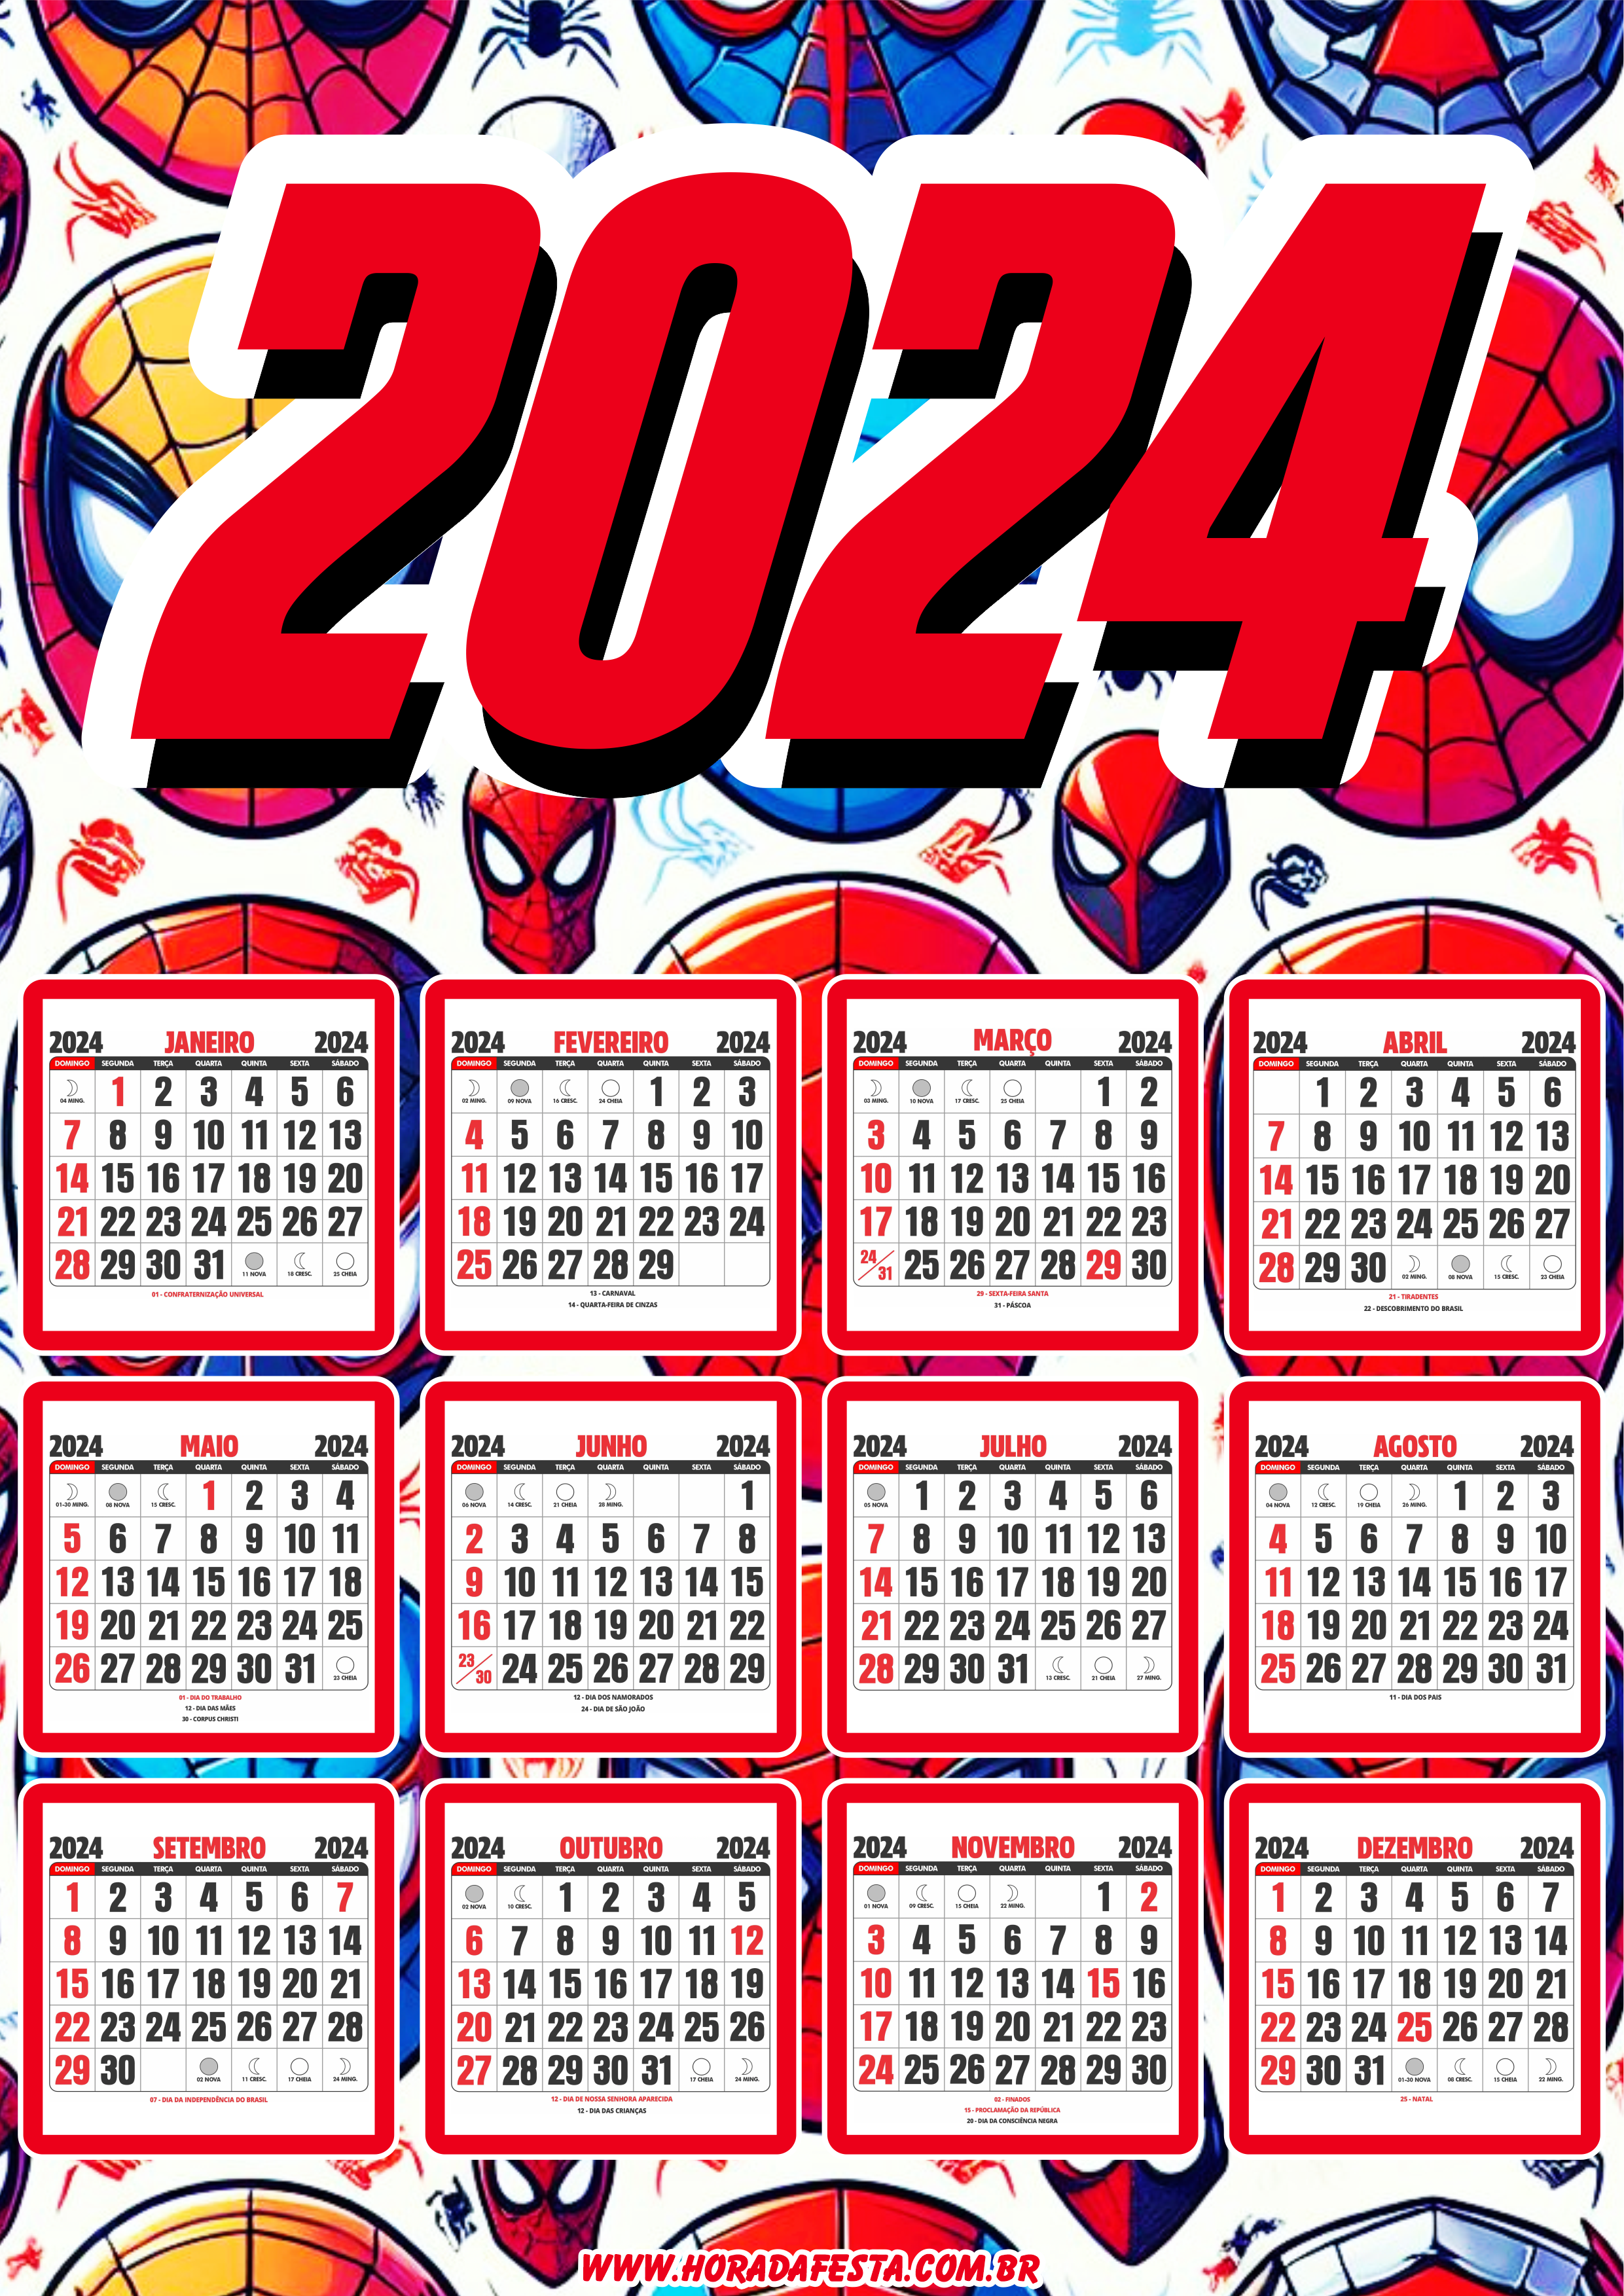 Calendário 2024 personalizado homem aranha spider man artigos de papelaria para festa infantil pronto para imprimir grátis png